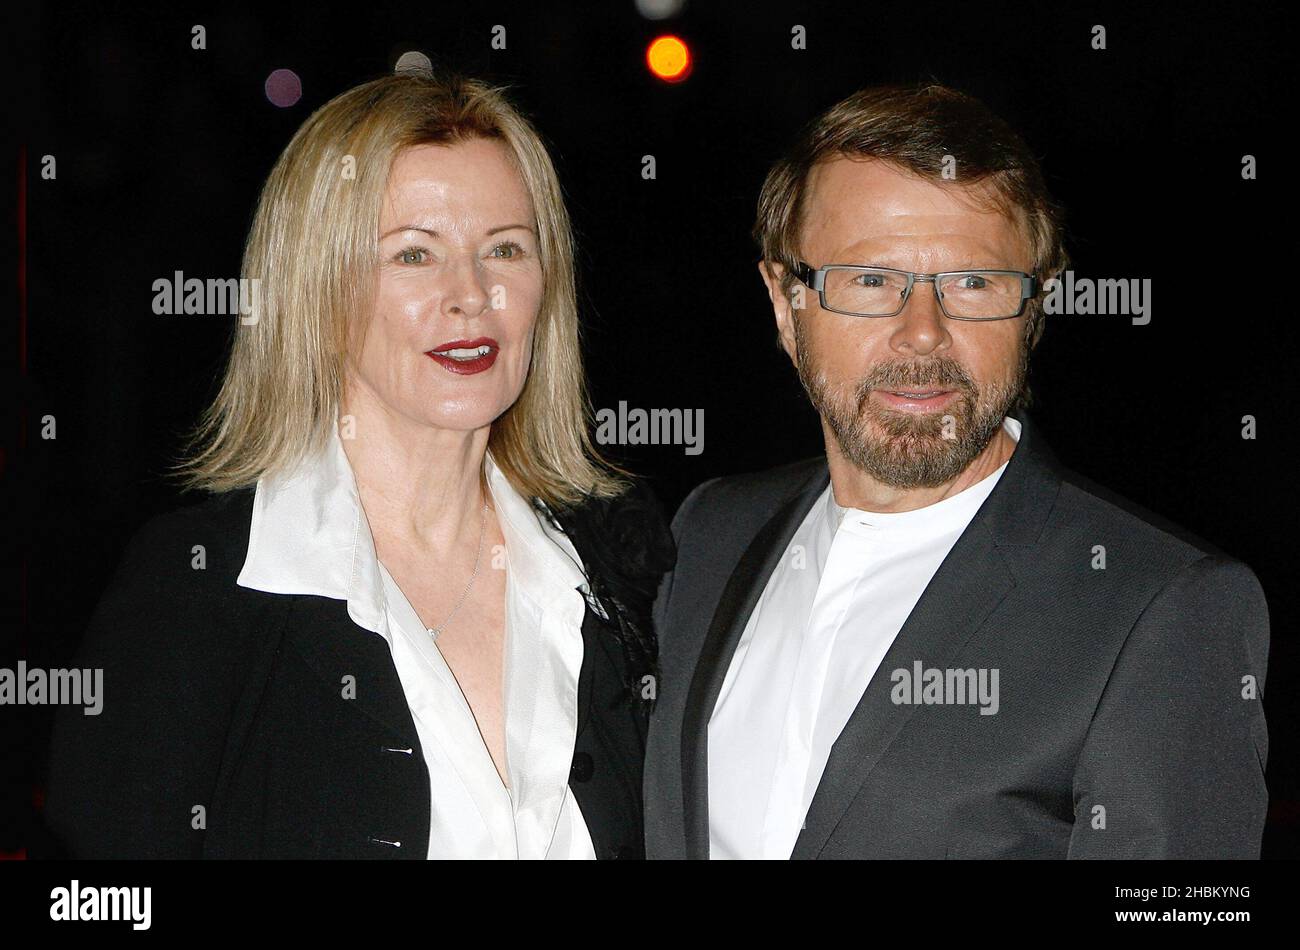 Anni-Frid Lyngstad und Bjorn Ulvaeus kommen zur Premiere der ABBA-Weltausstellung im Earl's Court in London. Stockfoto